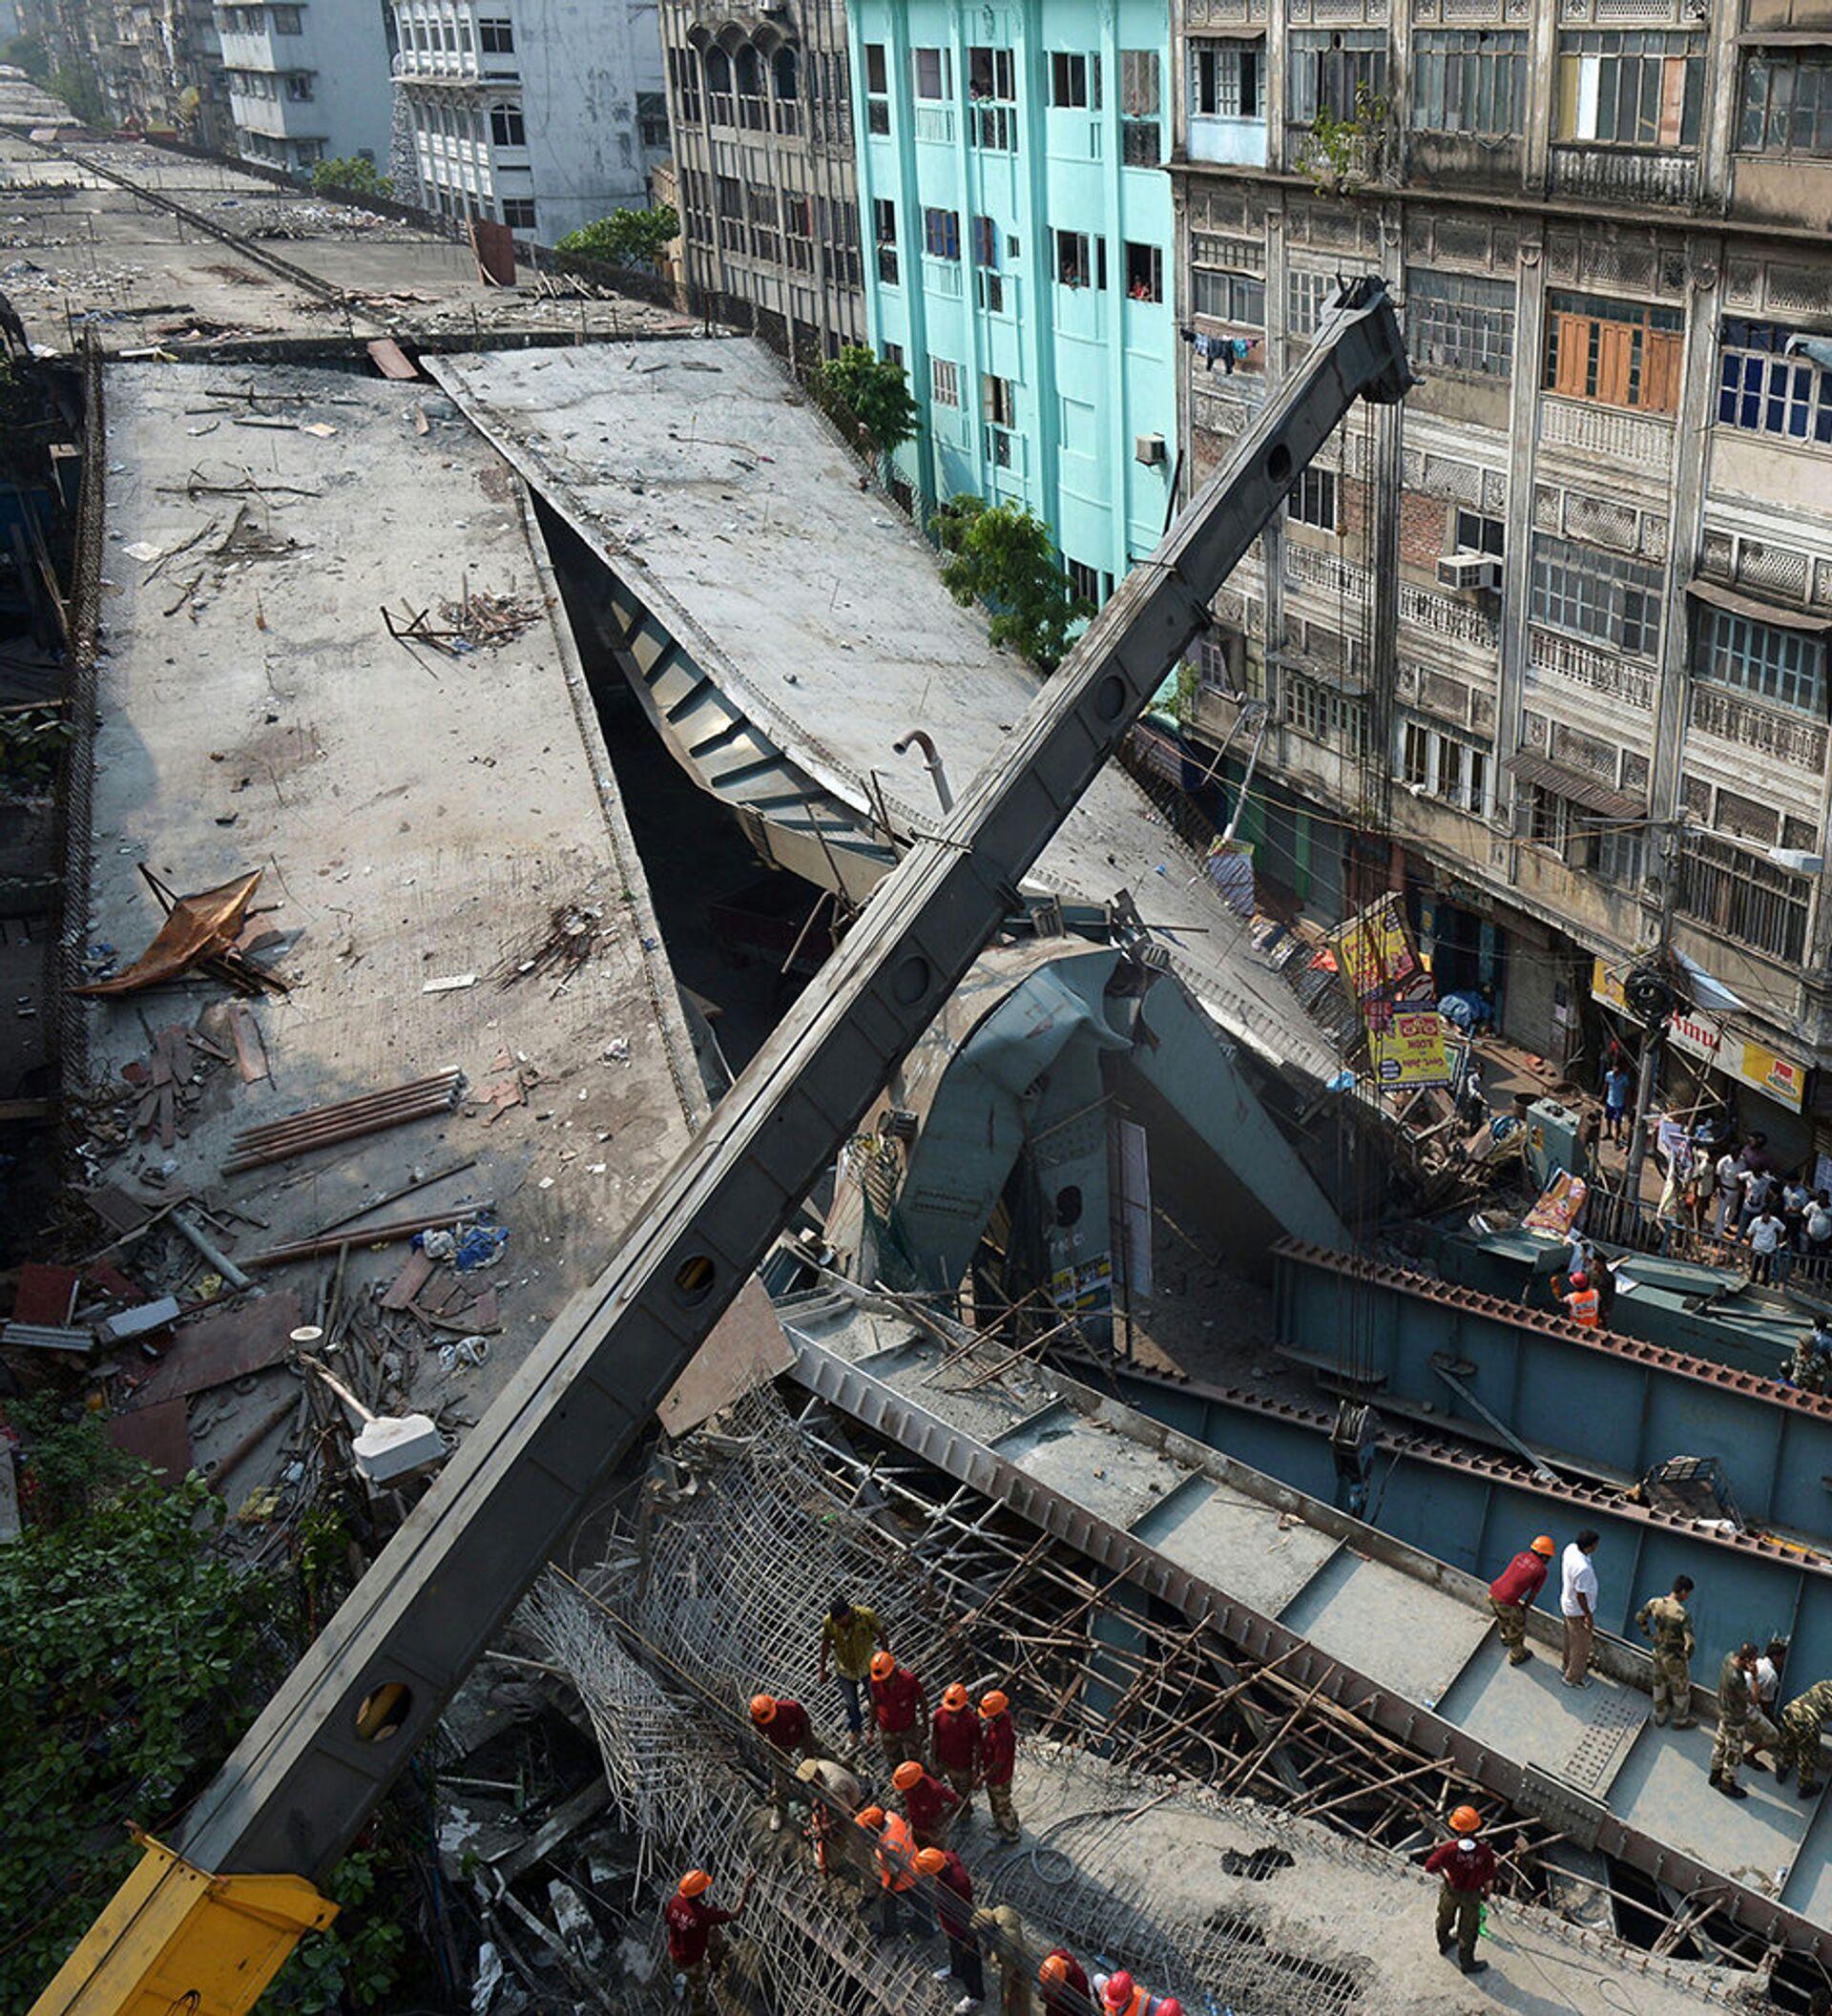 Отчего упала. Обрушенный мост в Калькутте. Обрушение путепровода. Обруше5ие моста в иедит.